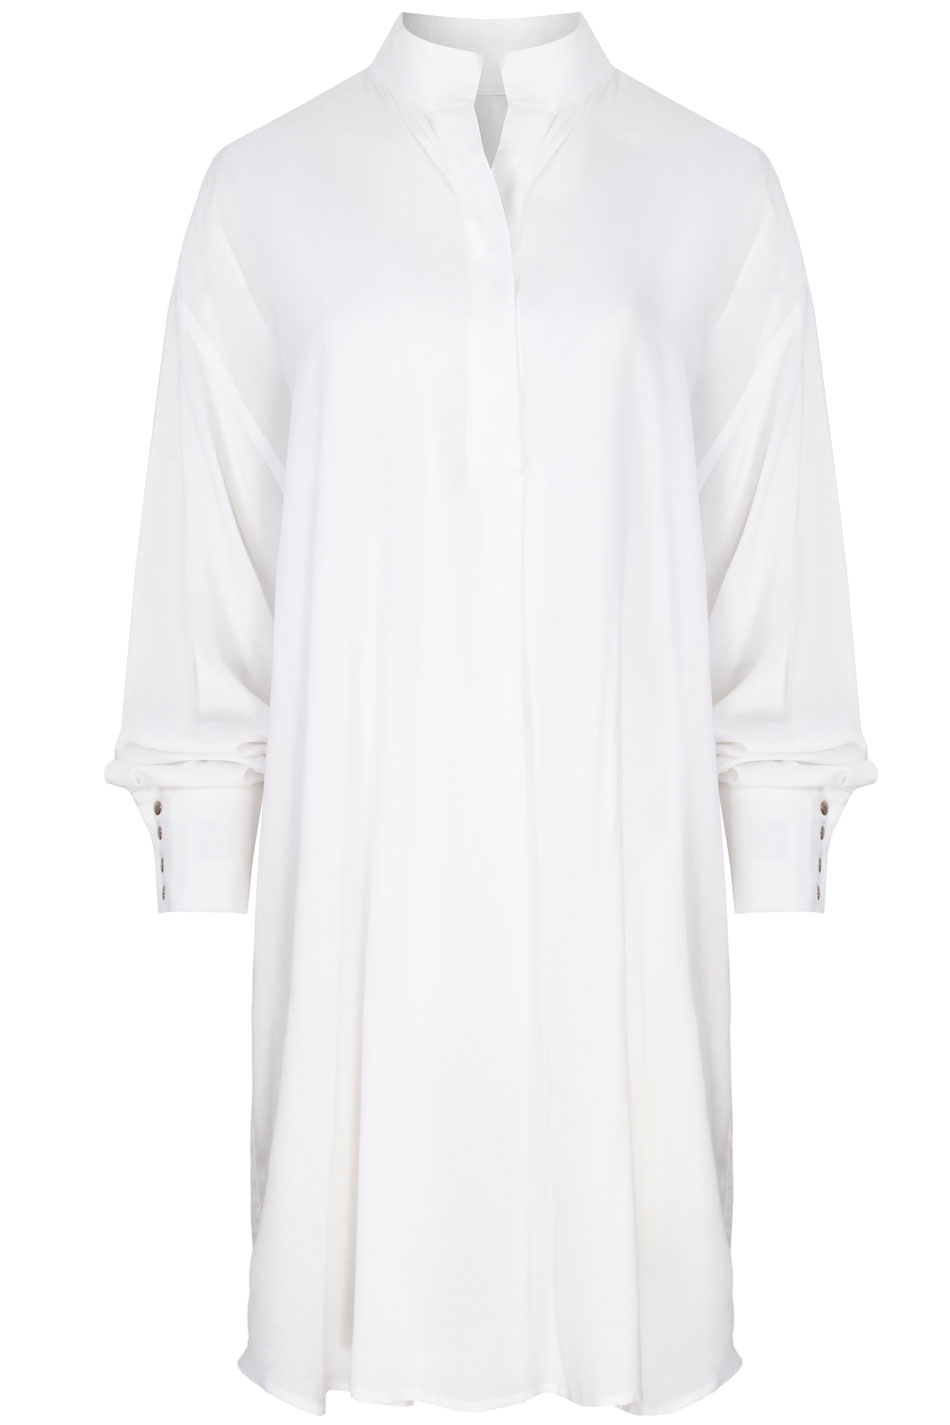 Koszulo-sukienka oversize biała